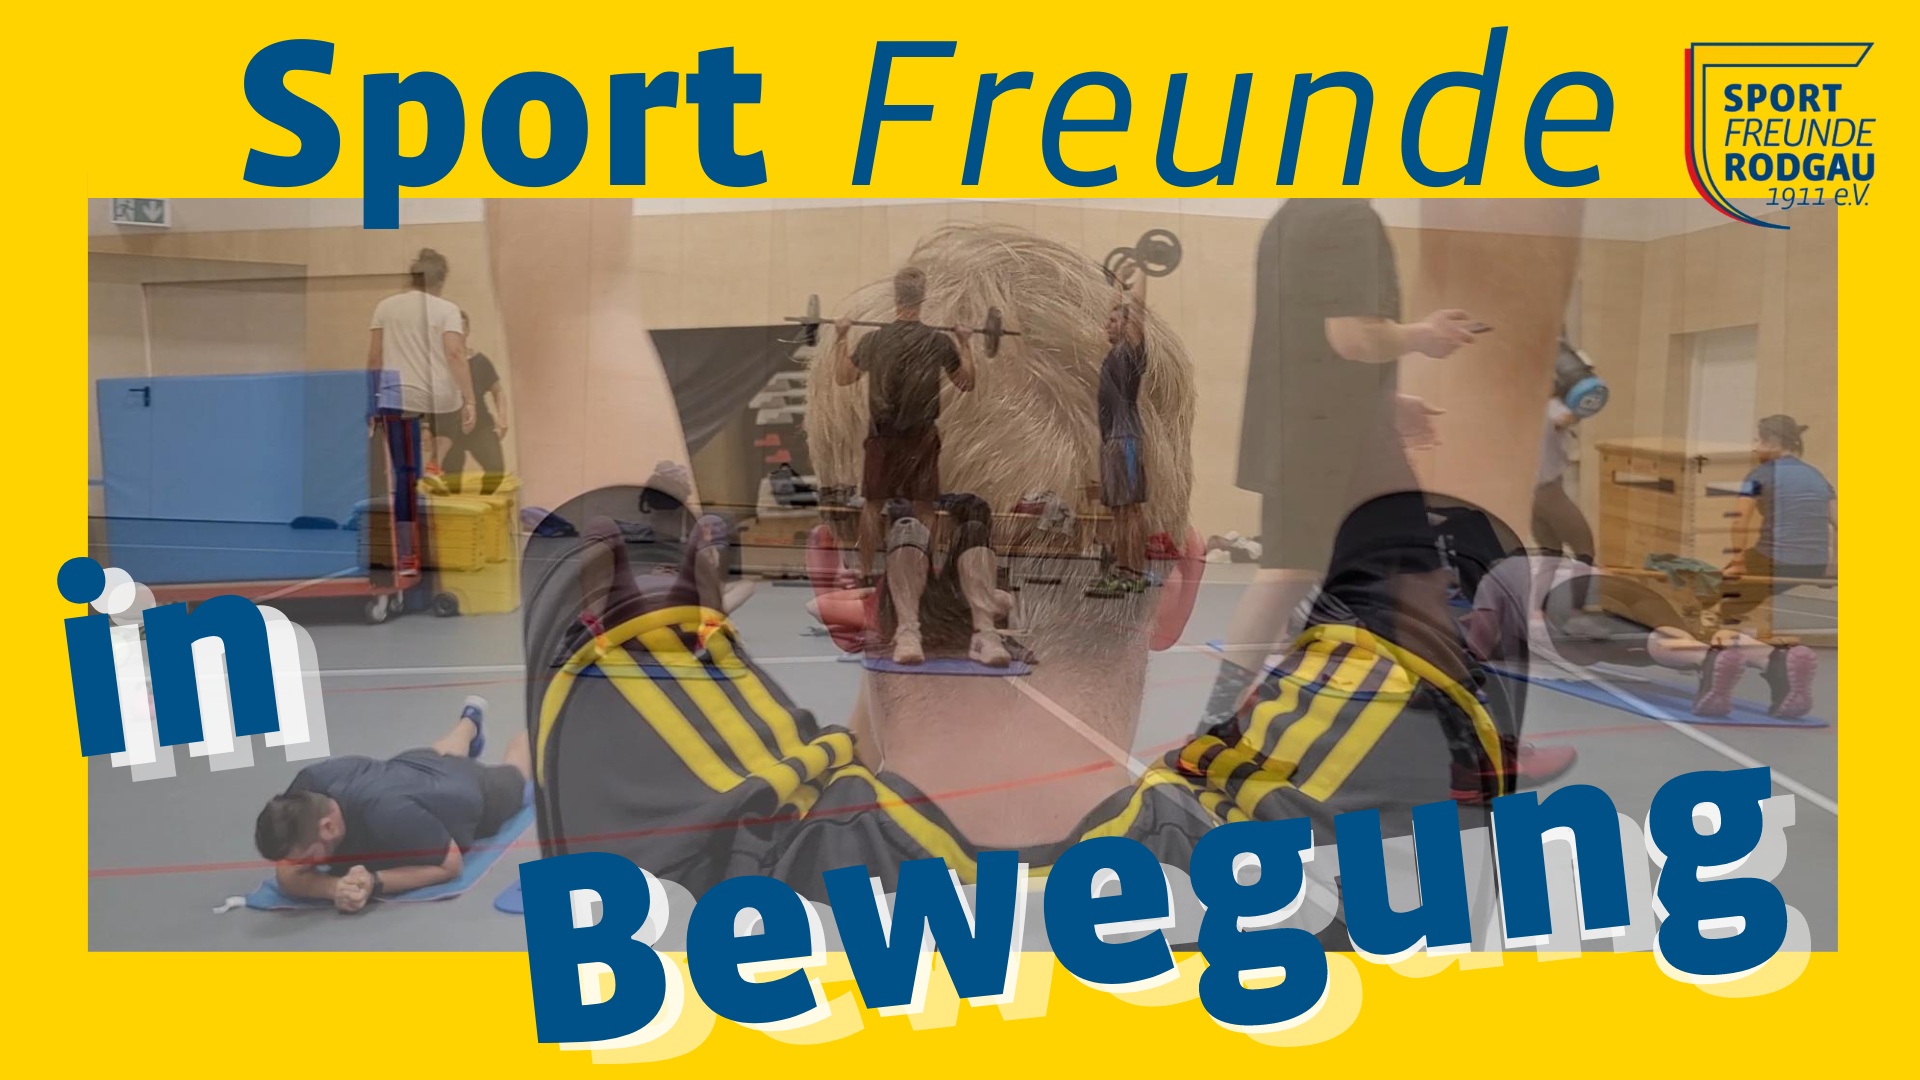 Sport Freunde in Bewegung 1080 x 1080 px